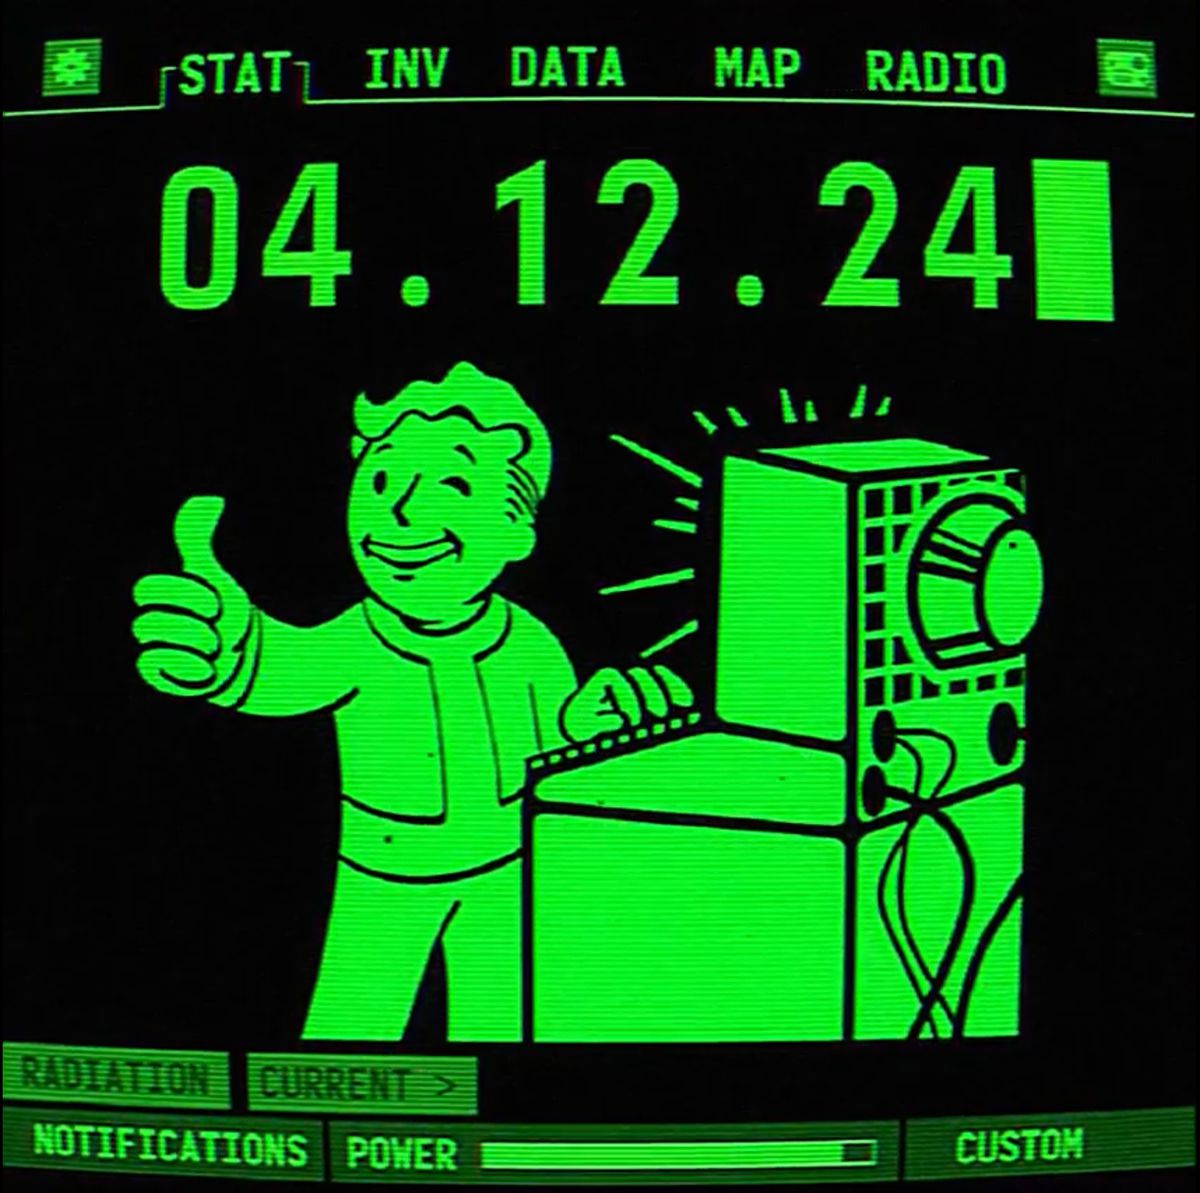 Ett Pip-Boy-gränssnitt från Fallout-serien annonserar utsläppsdatumet för Fallout för Prime Video, 04.12.24